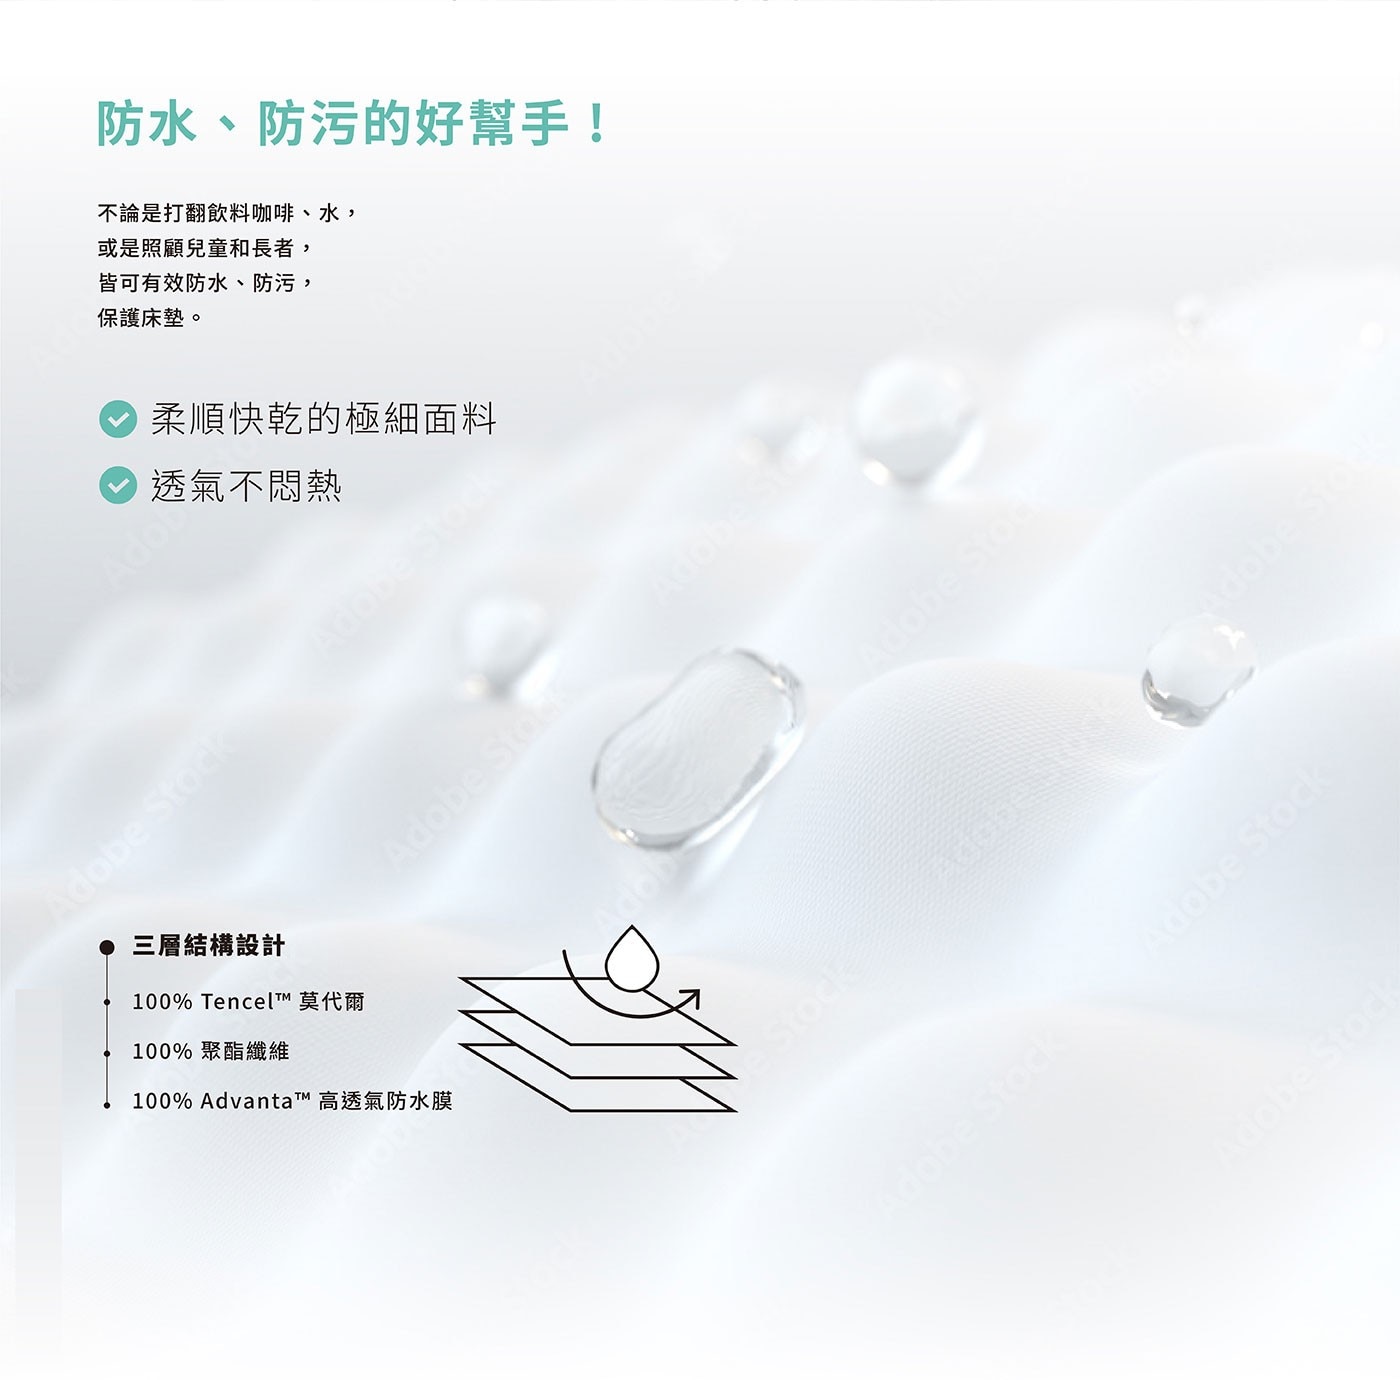 Reverie 天然舒眠防水保潔墊物理防螨，選用奧地利蘭精公司生產的Tencel品牌莫代爾纖維，三層結構貼合設計，可將水分快速吸收於中間棉層。